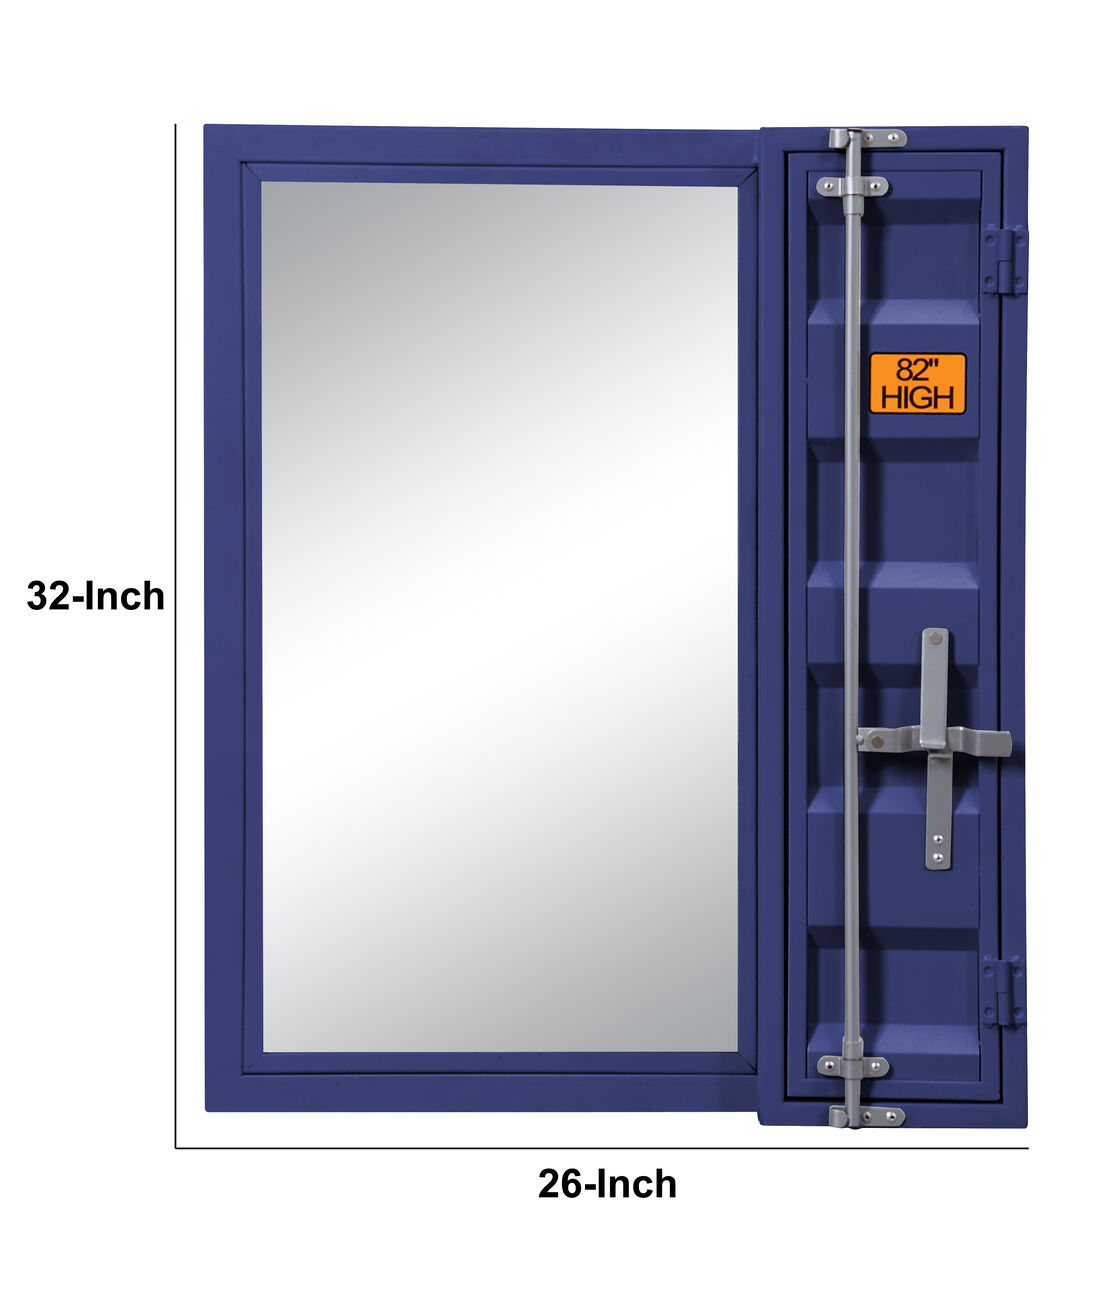 Industrial Style Metal Vanity Mirror with Recessed Door Front, Blue